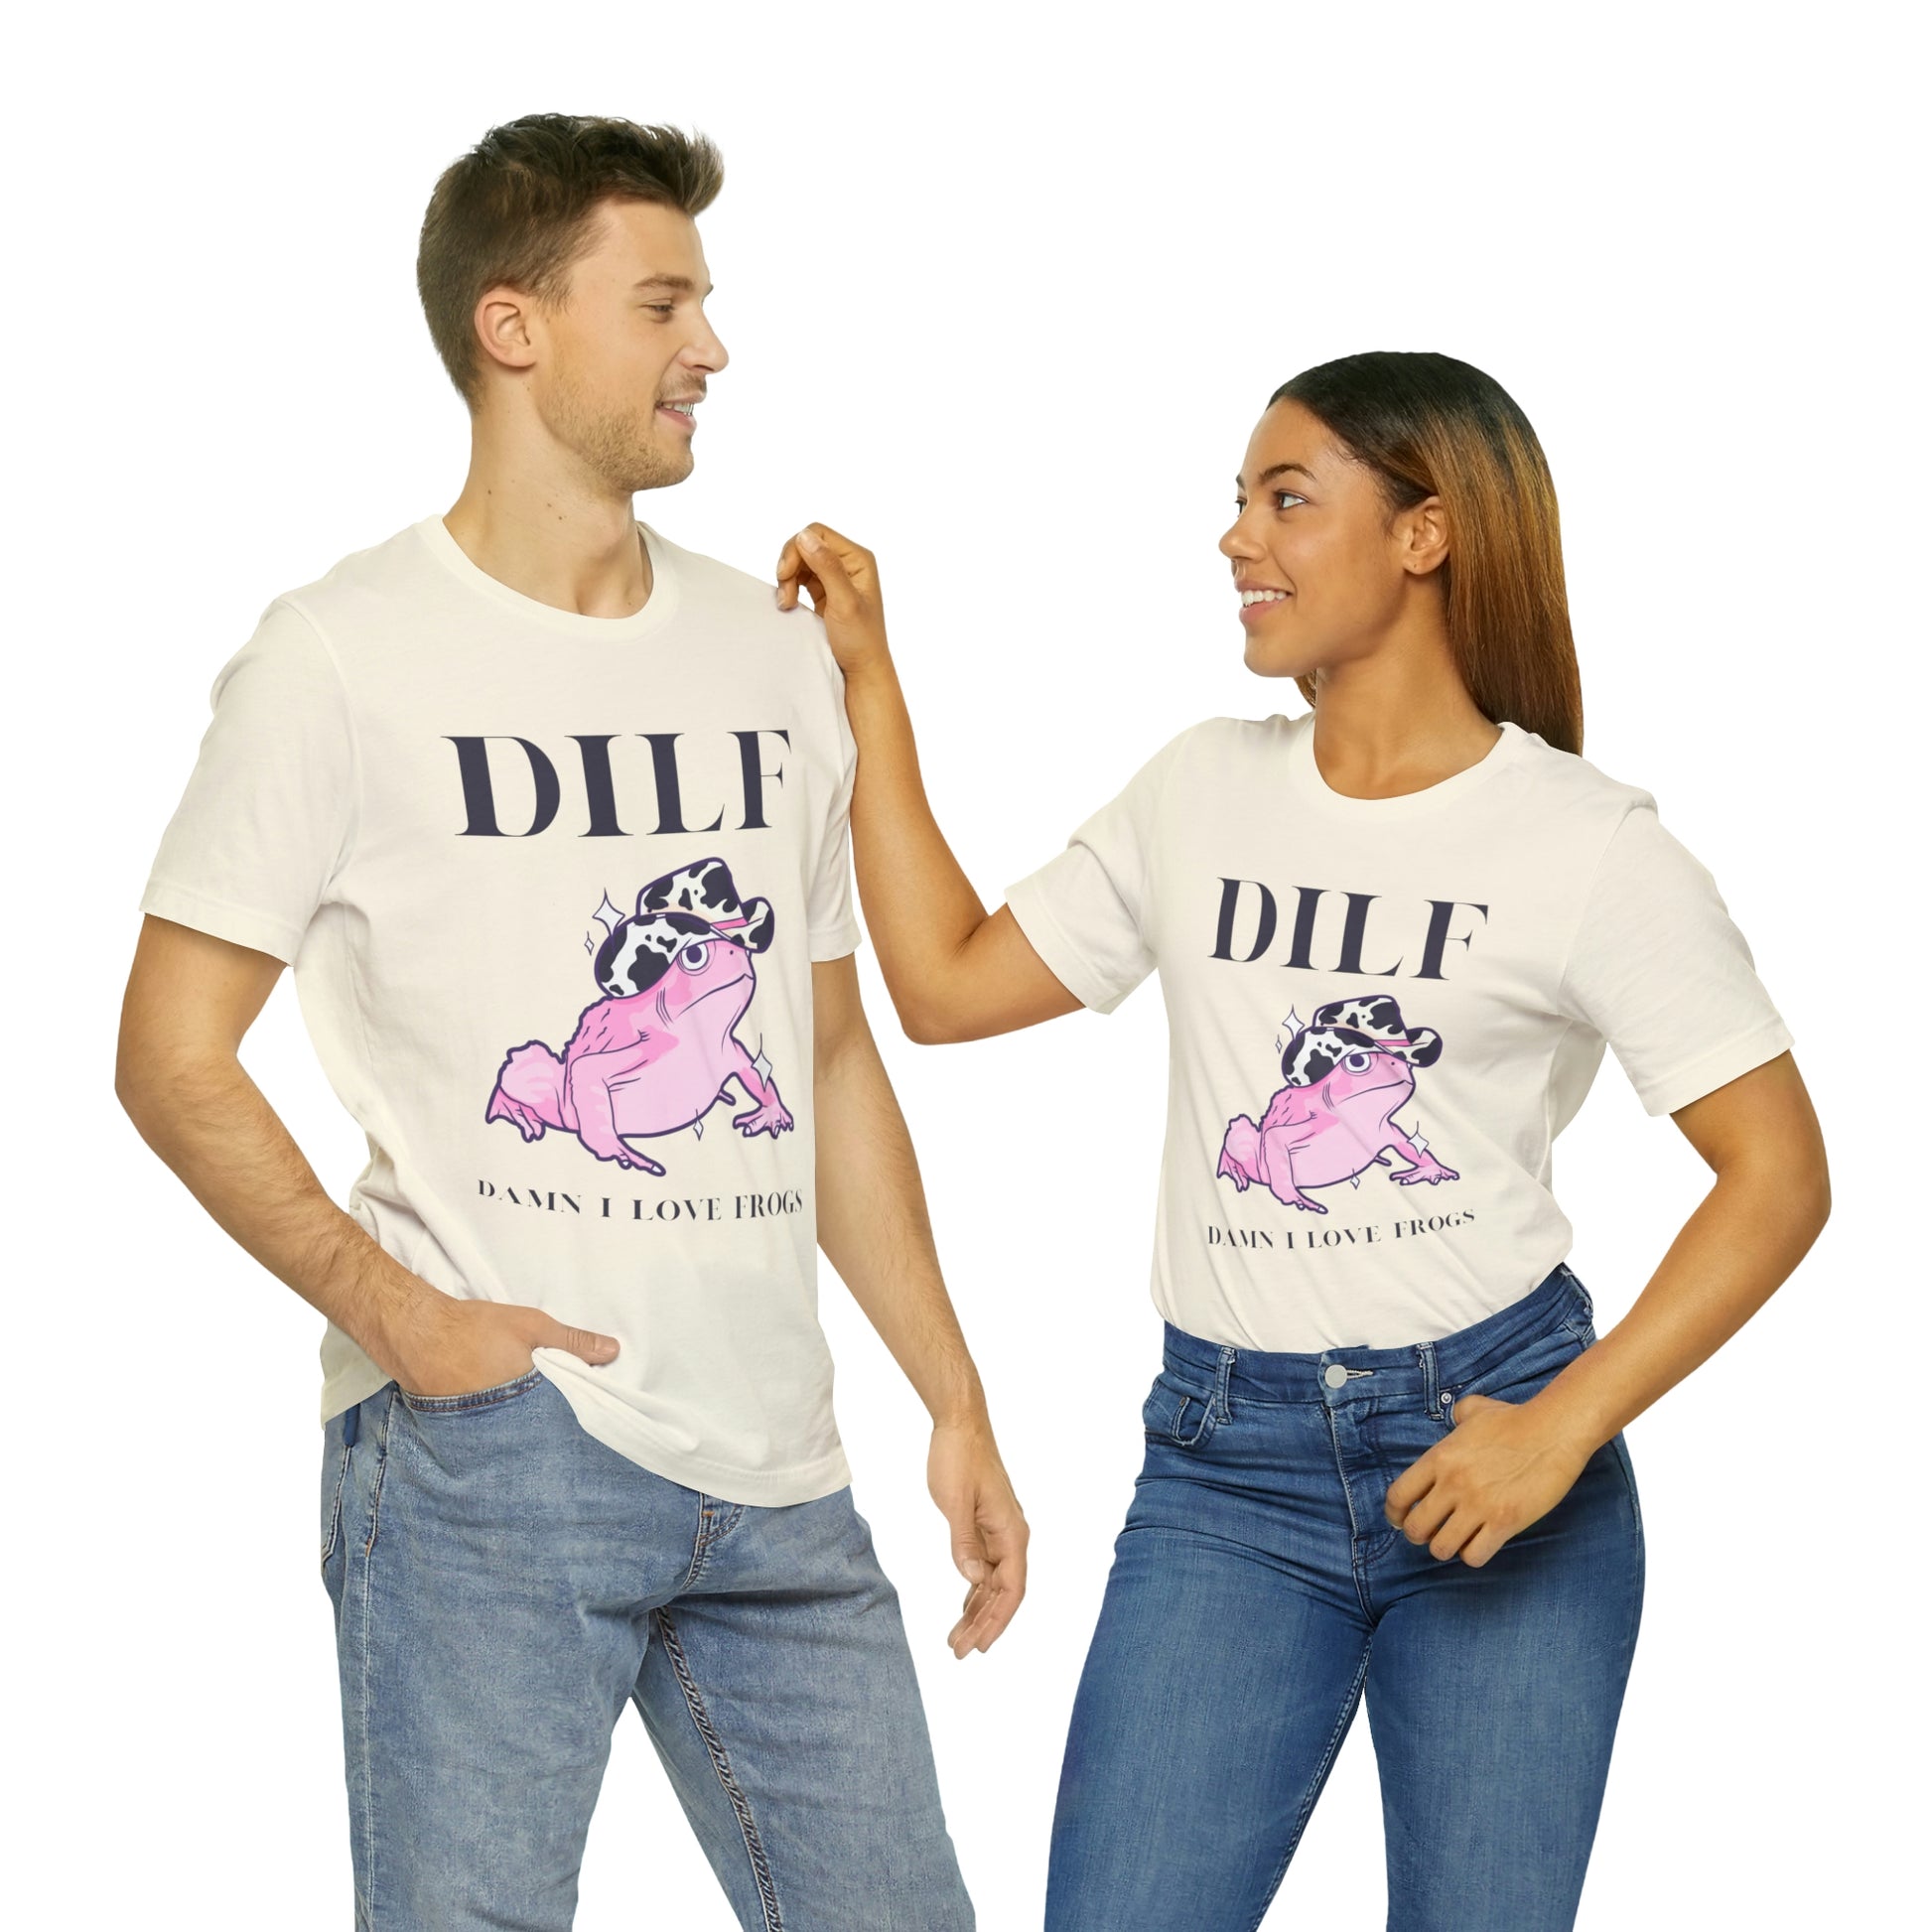 DILF Fish Shirt Damn I Love Fishkeeping Funny Aquarium T-shirt for